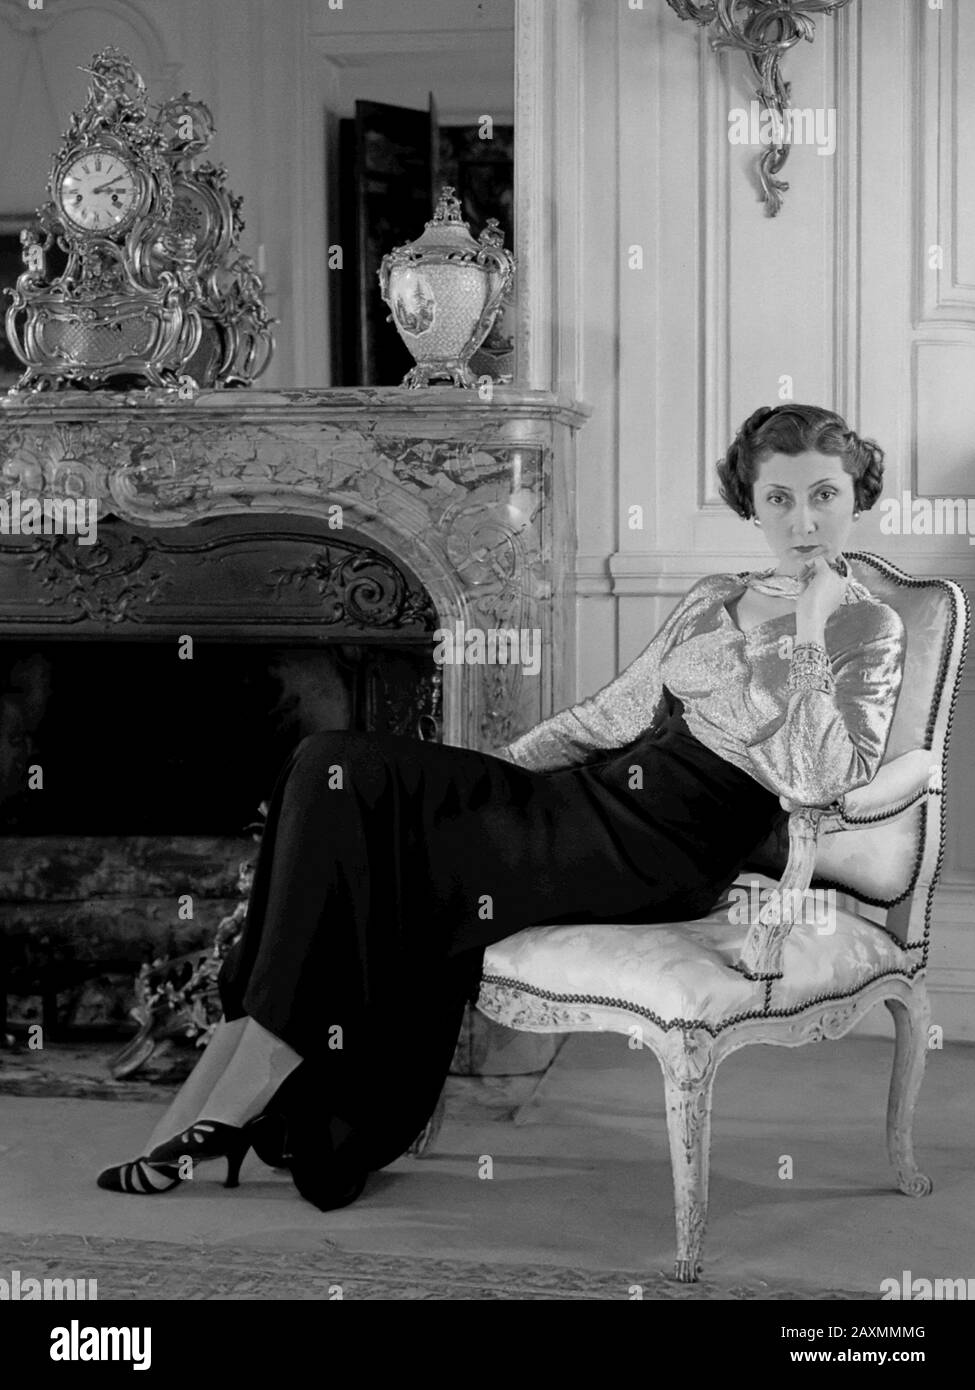 De gravin van Parijs poseert in een hôtel in Parijs in een japon van Paquin  1936 Stock Photo